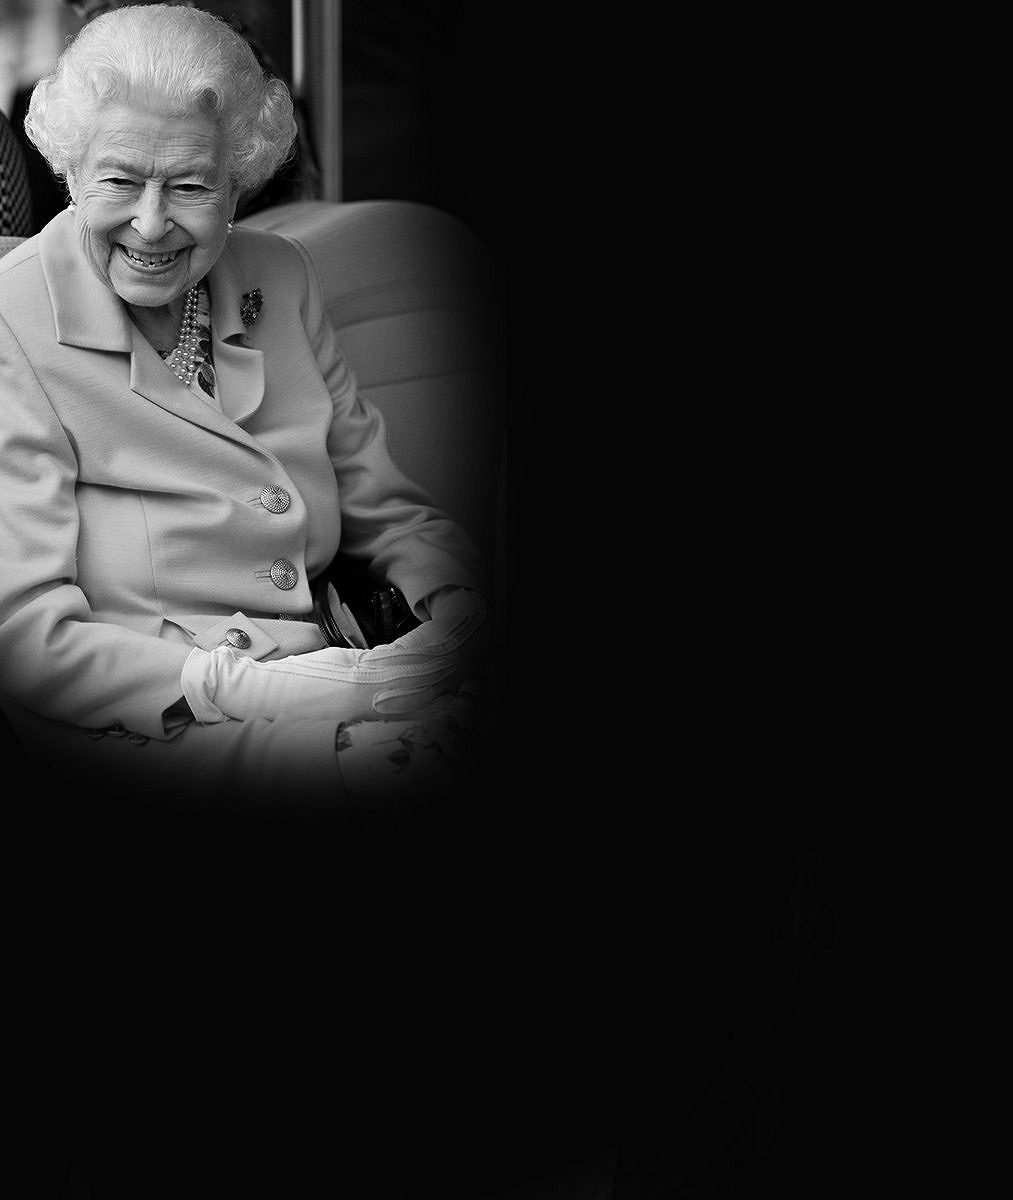 Symboly na rakvi královny Alžběty II.: Co stálo v ručně psaném vzkazu?